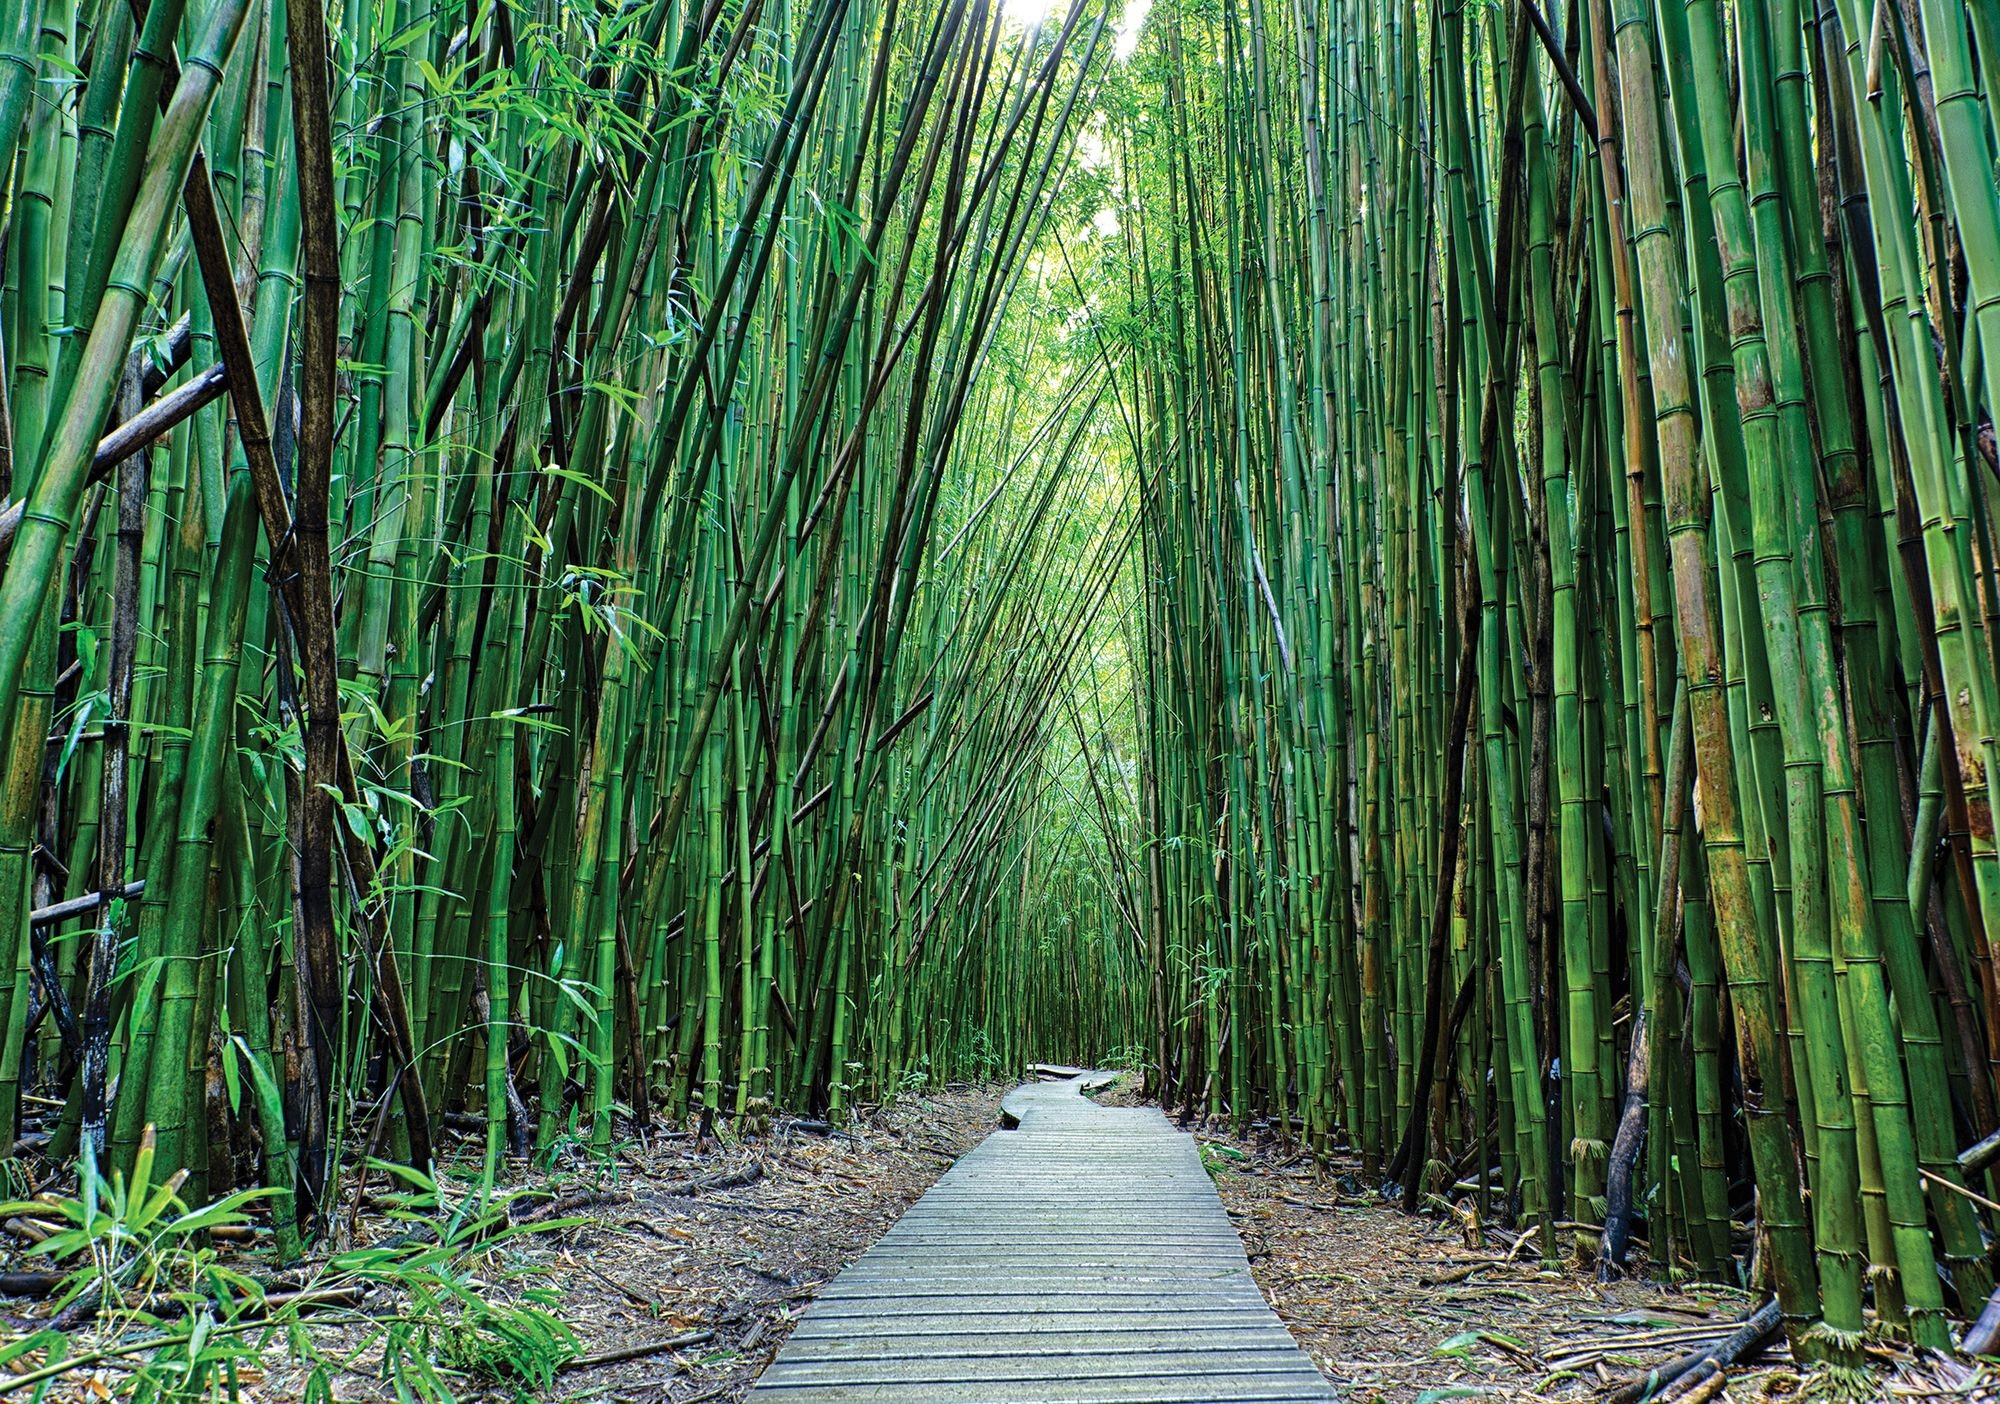 Fototapet vlies: Pădure de bambus (2) - 254x368 cm